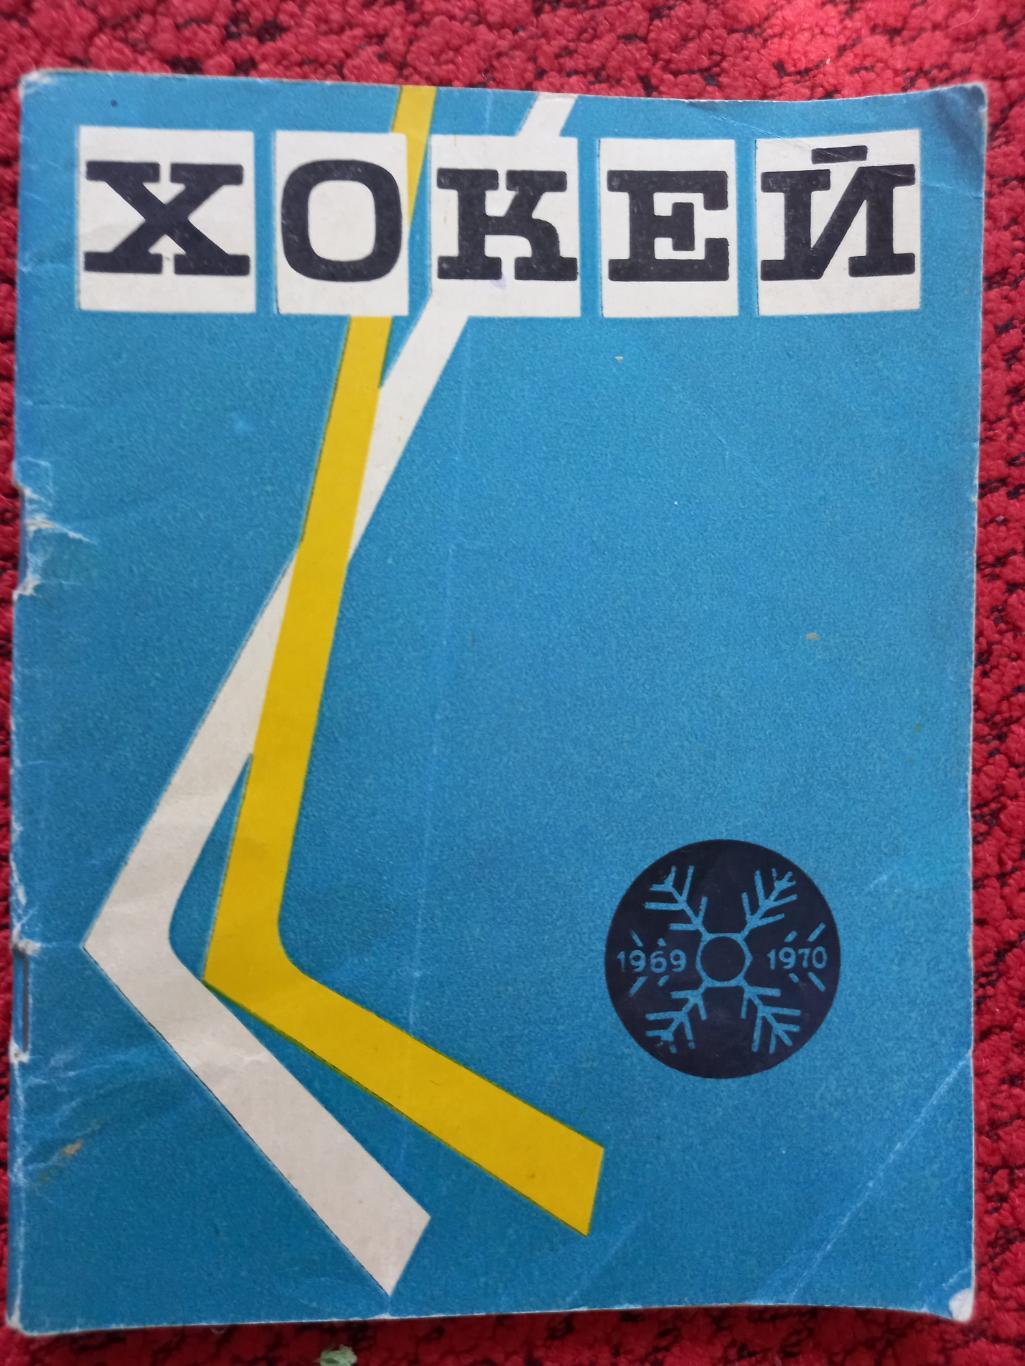 Календарь - справочник Киев 1969 -1970